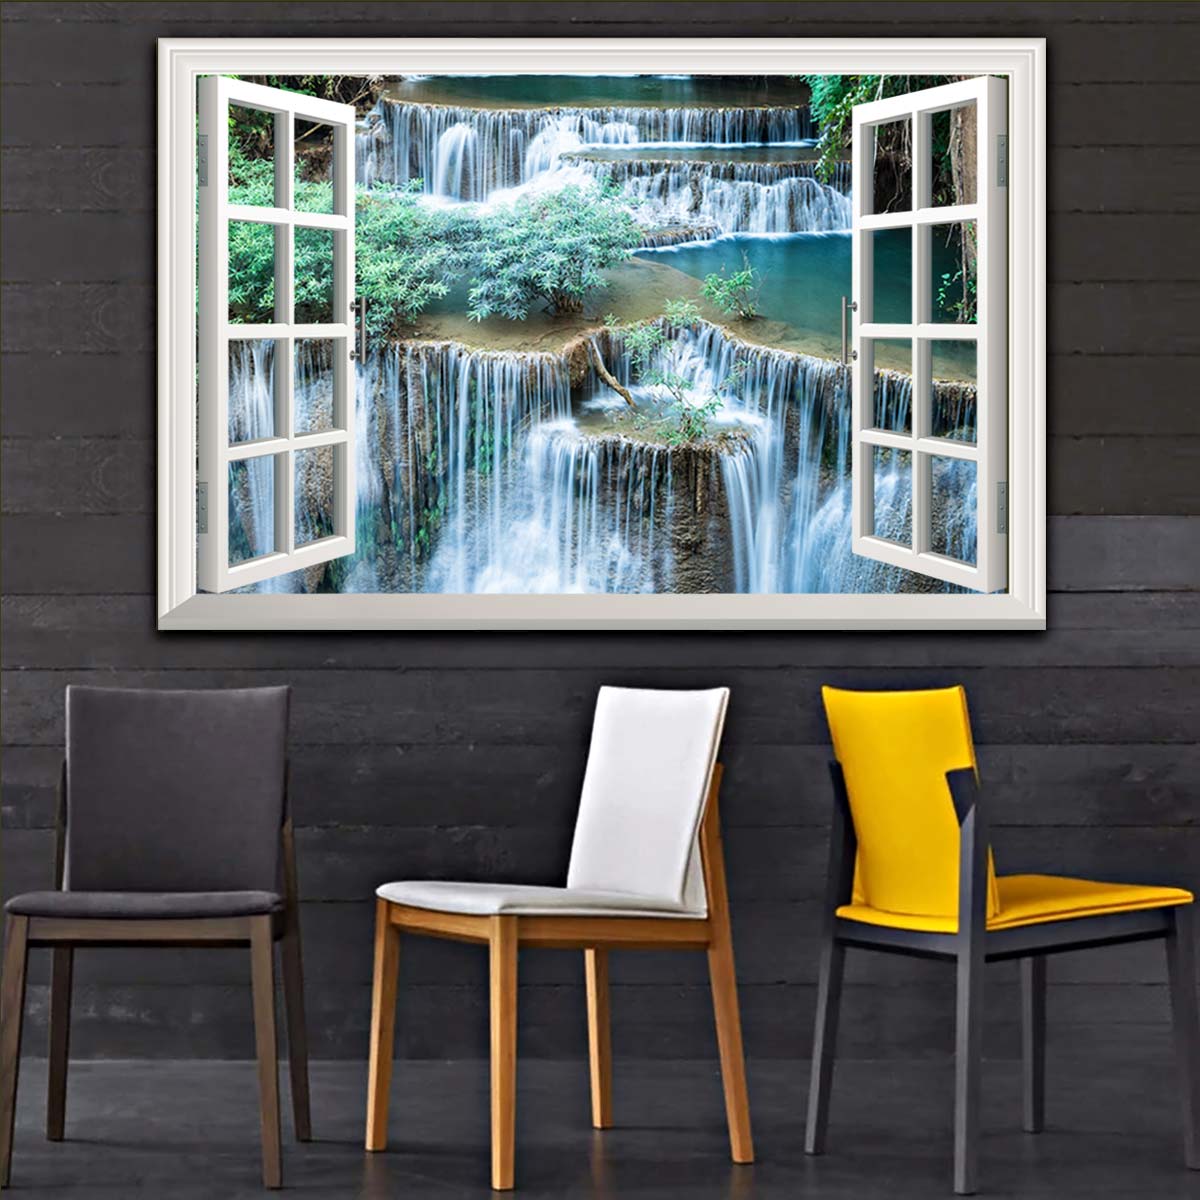 Bức tranh dán tường cửa sổ THÁC NƯỚC in giấy ảnh với 2 lựa chọn bề mặt cán PVC gương hoặc cán bóng, mã số: 00402196L11